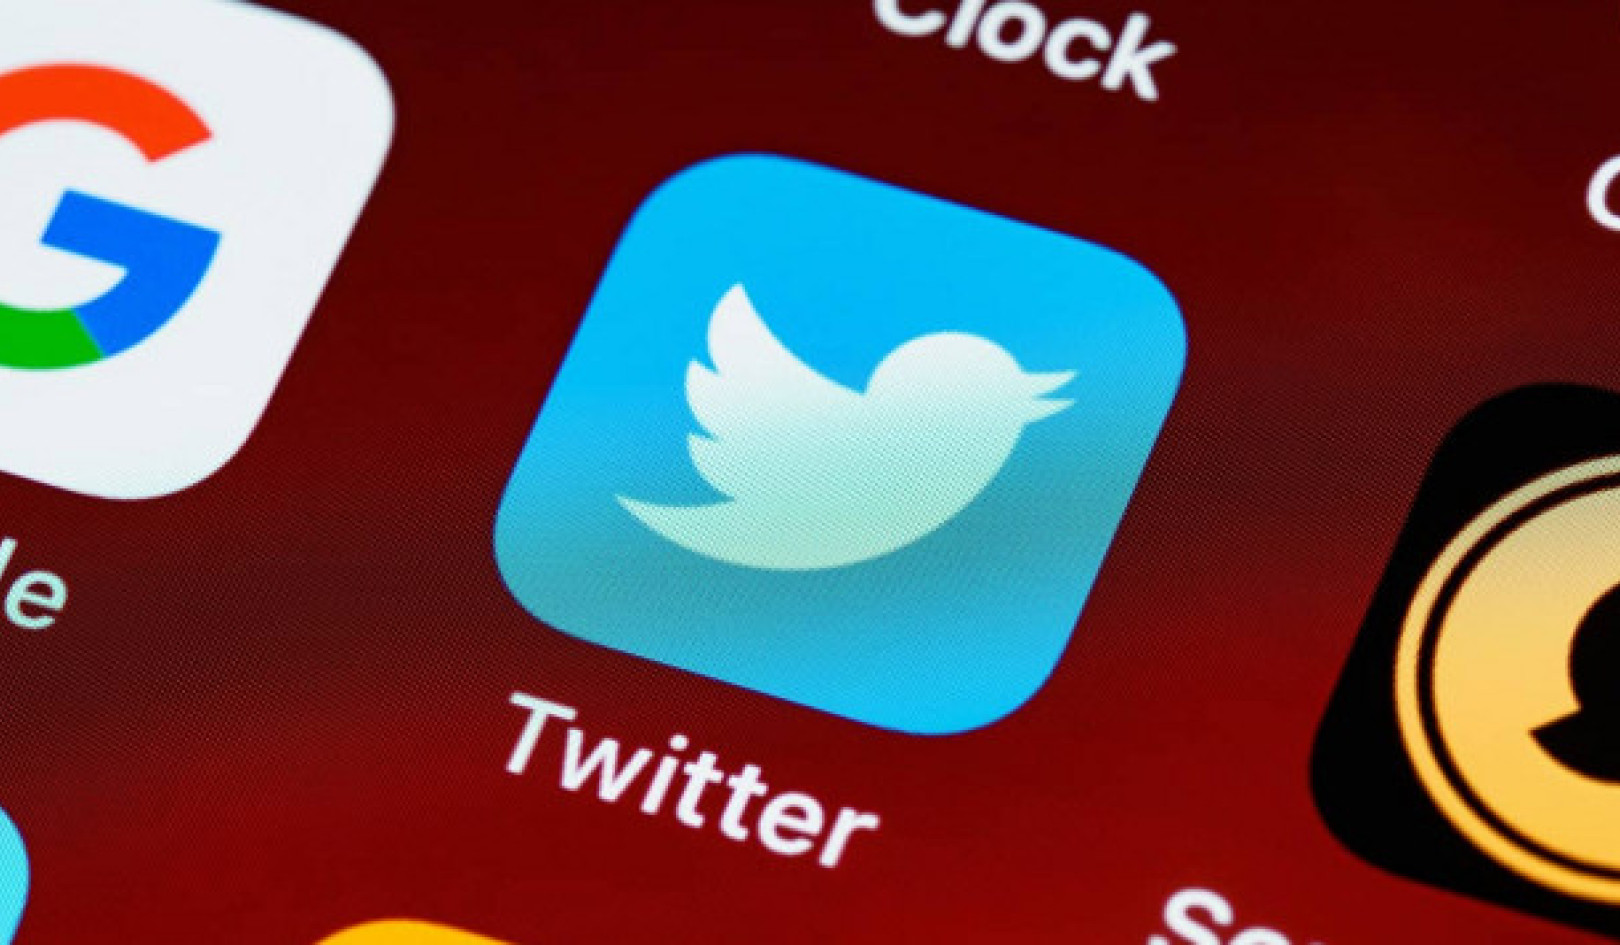 Các nhà lãnh đạo chính trị trên Twitter: Ngược lại xu hướng trong nội dung không đáng tin cậy